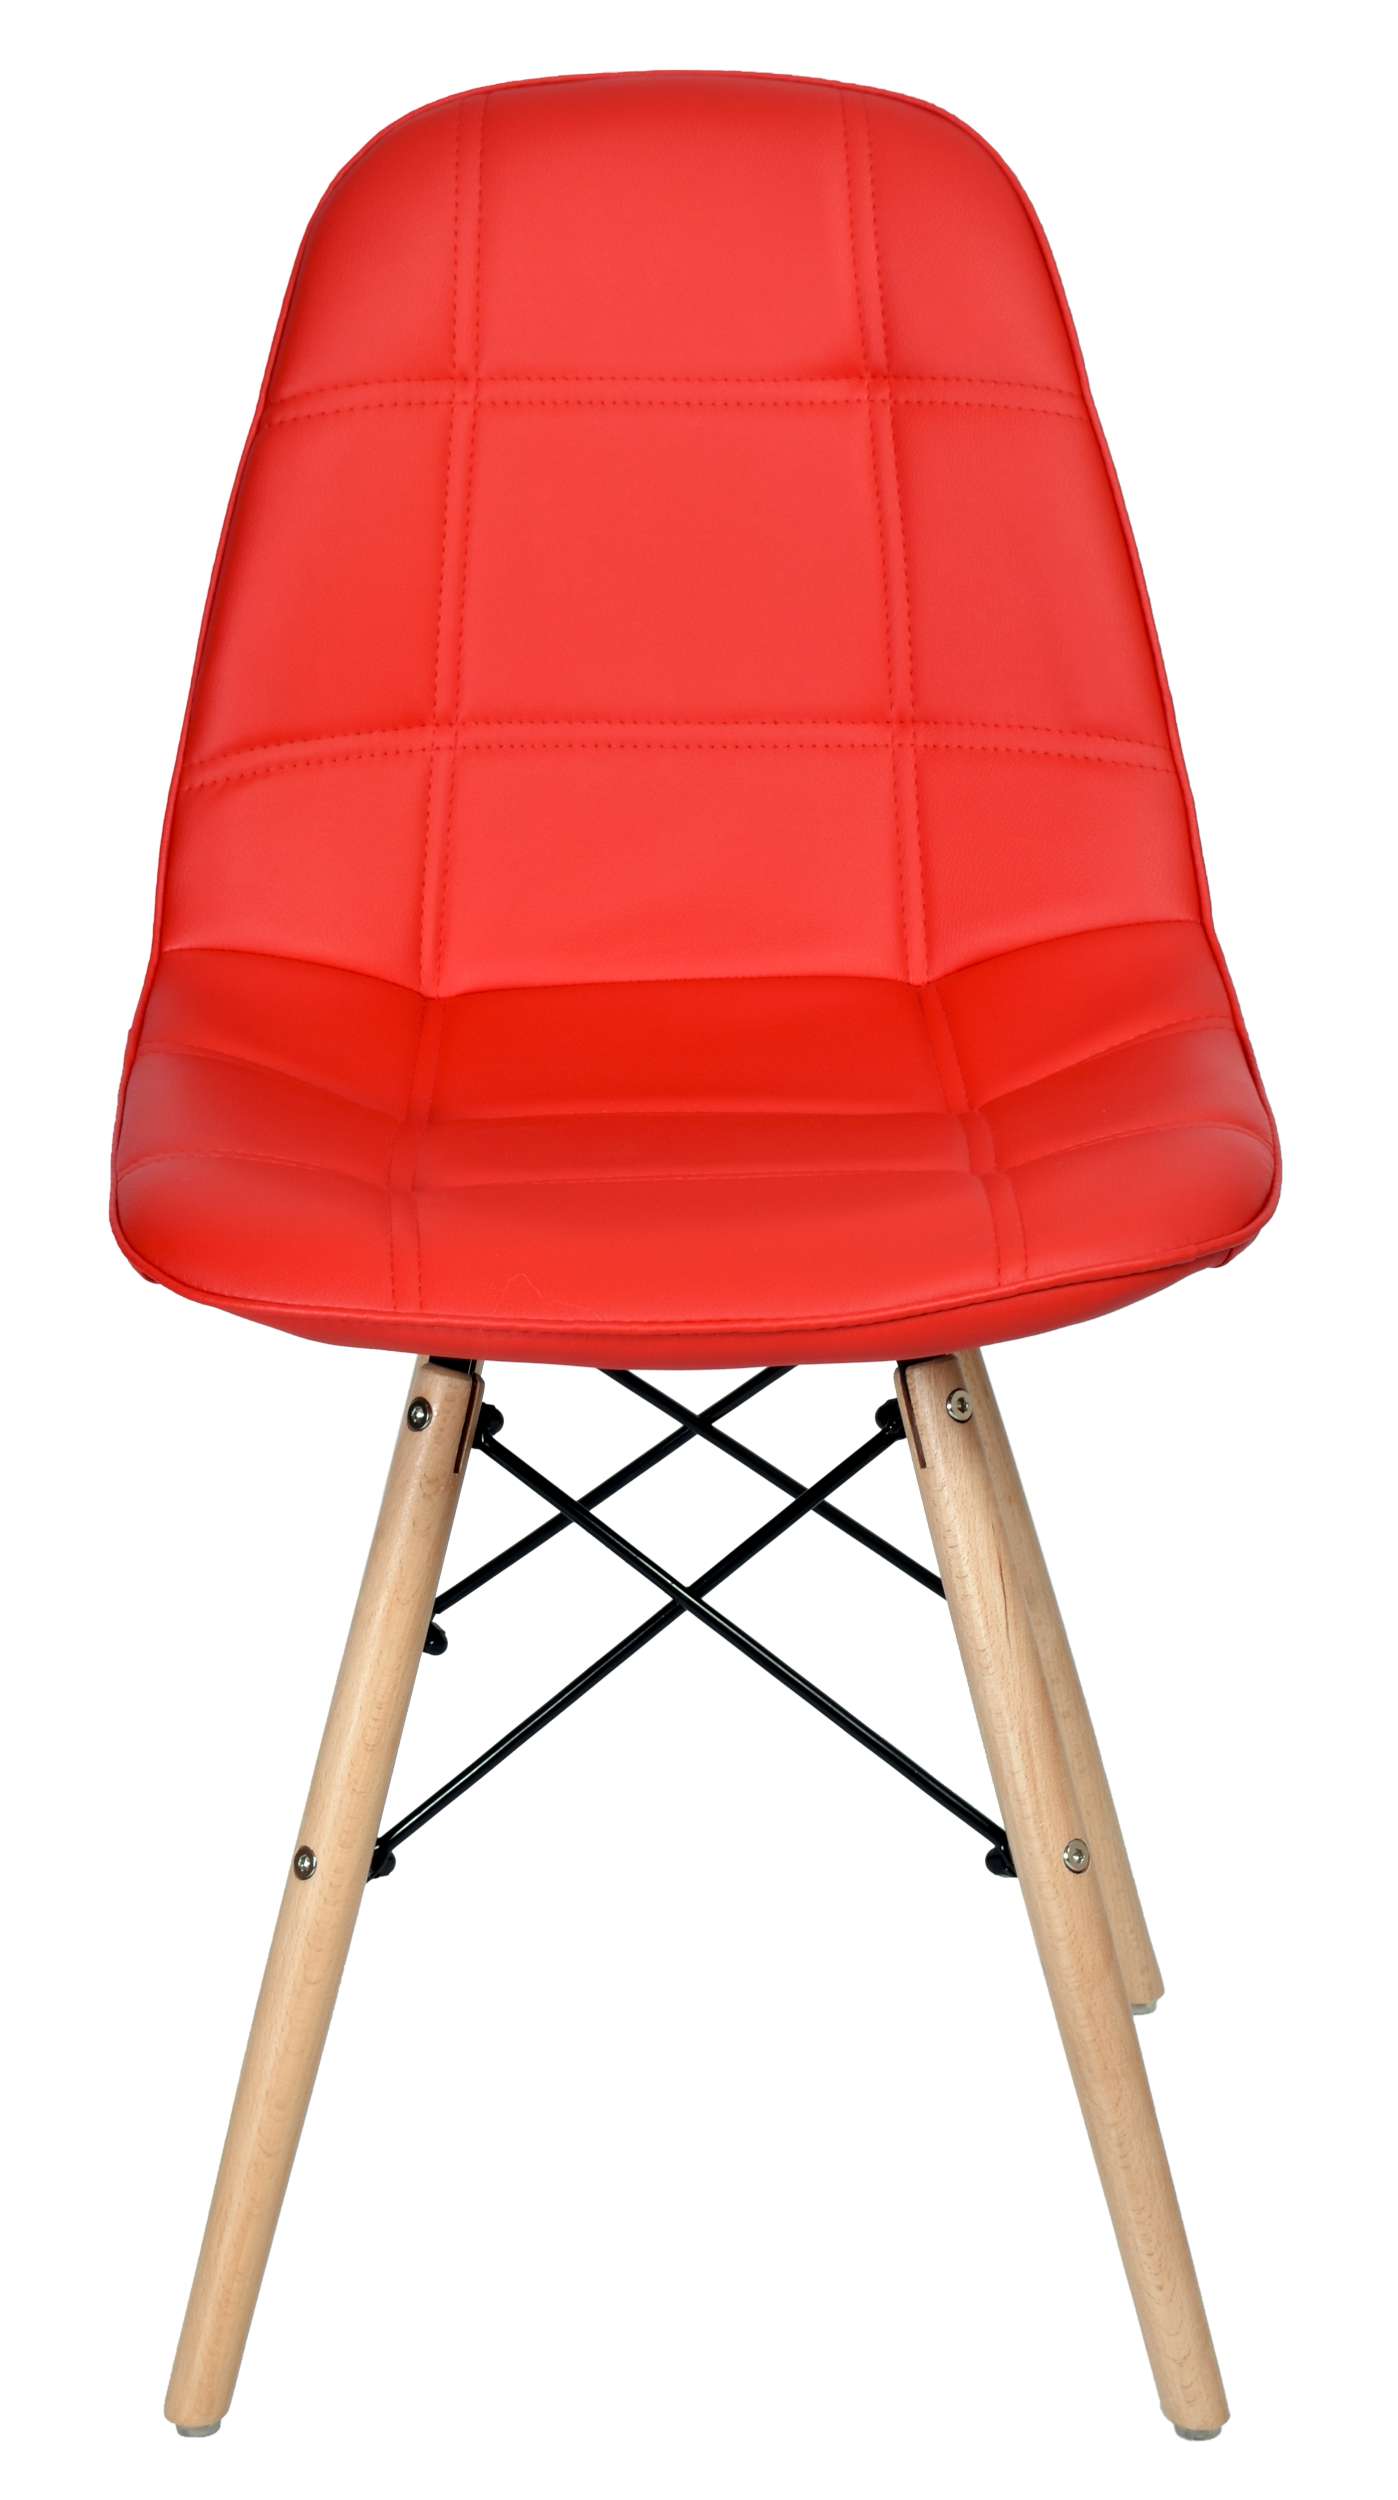 Krzesło nowoczesne tapicerowane LYON DSW jasno-szare